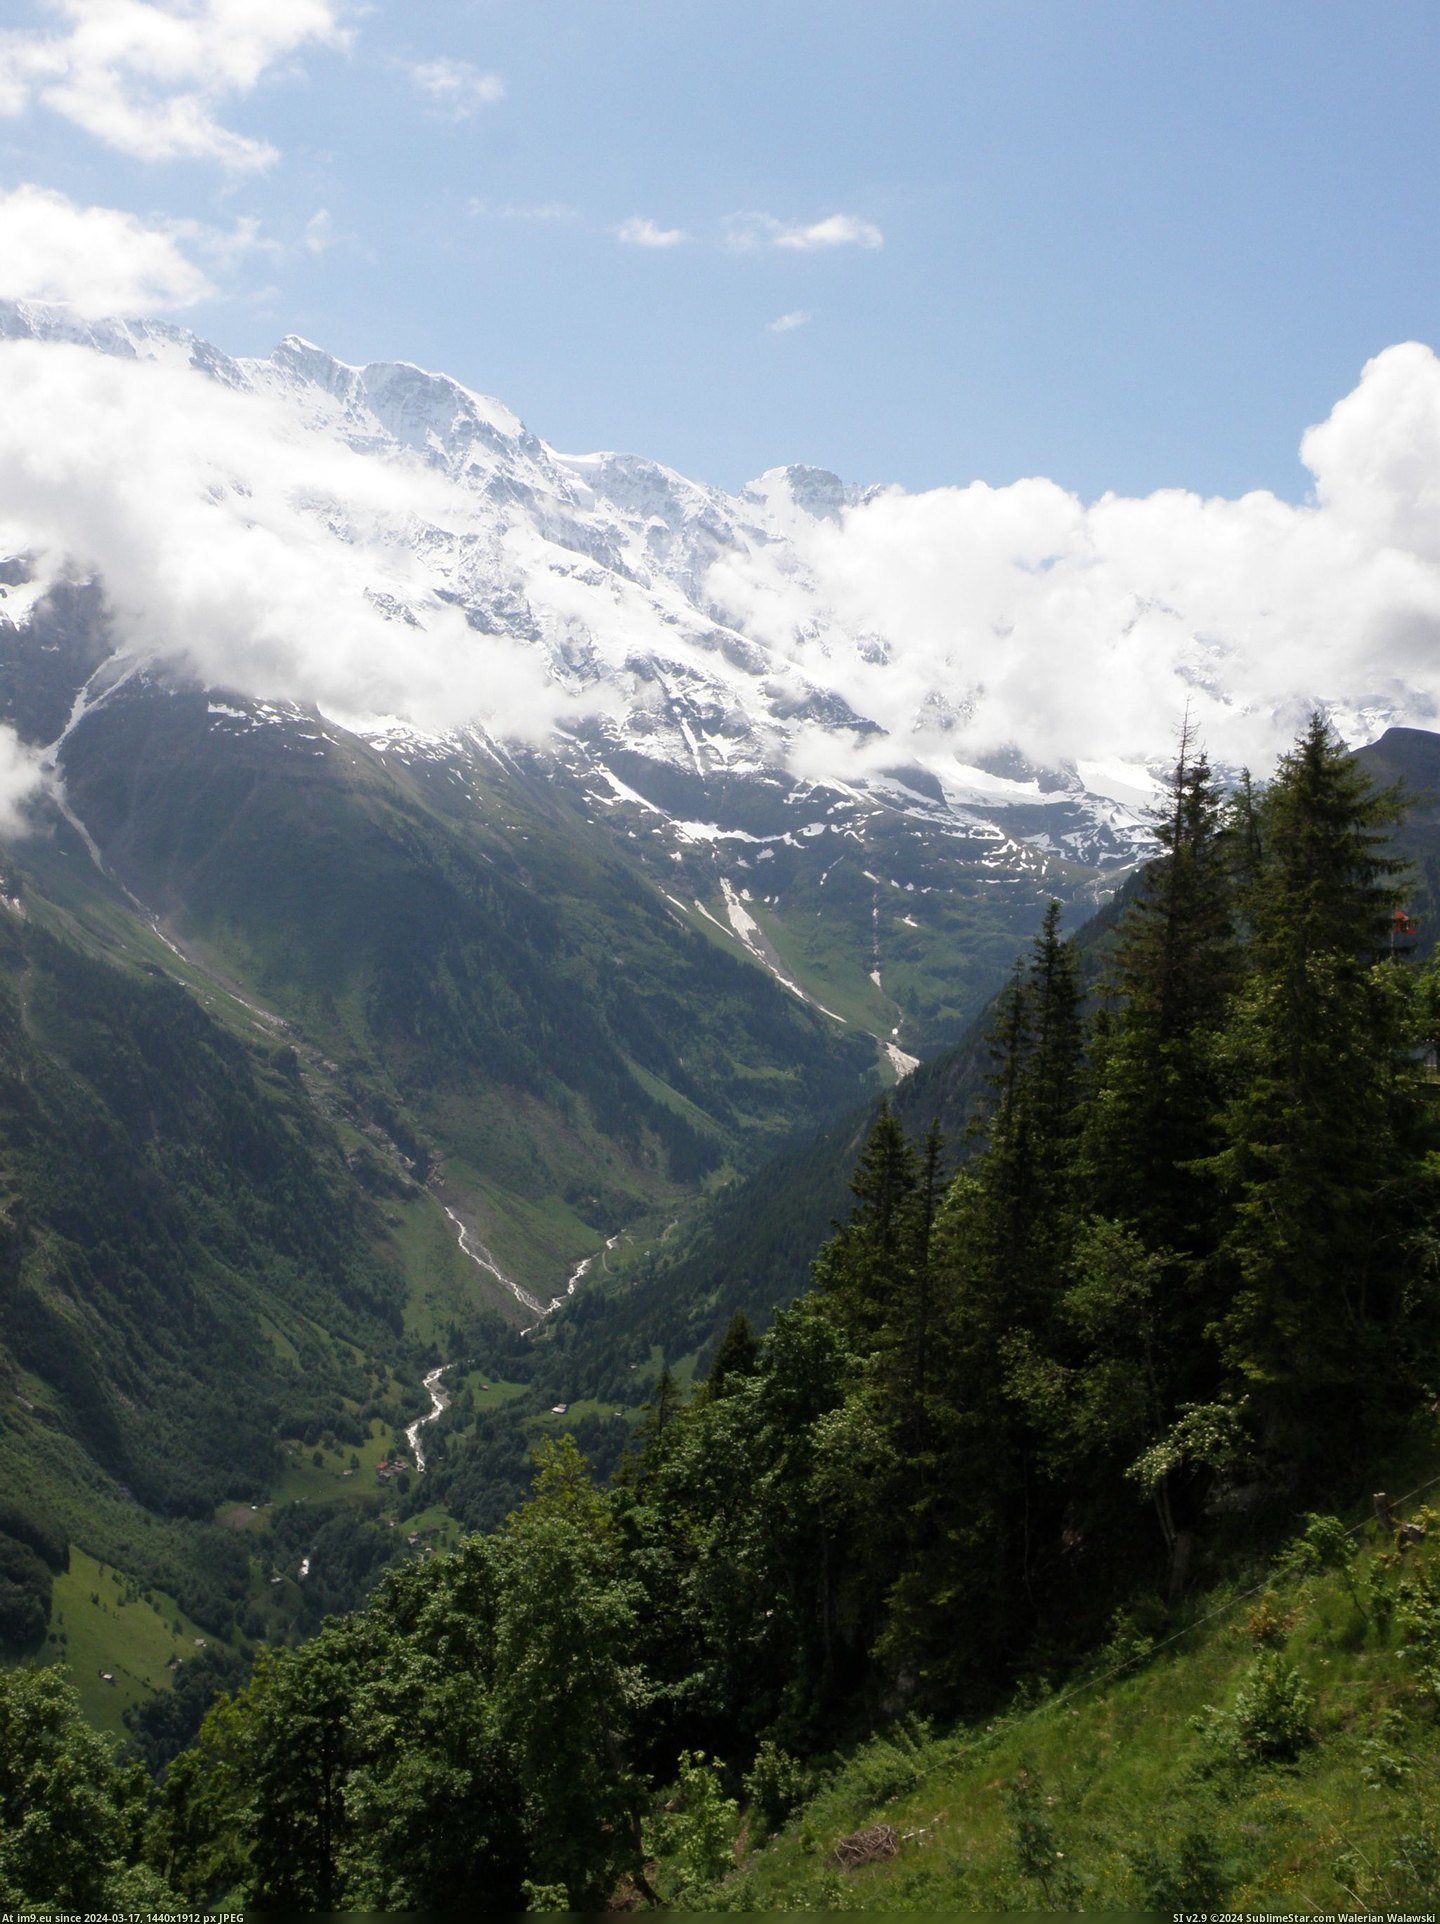 #Valley #Switzerland #Oberland #Lauterbrunnen #Bernese [Earthporn] The Lauterbrunnen Valley, Bernese Oberland, Switzerland, June 2013 [2052x2736] [OC] Pic. (Bild von album My r/EARTHPORN favs))